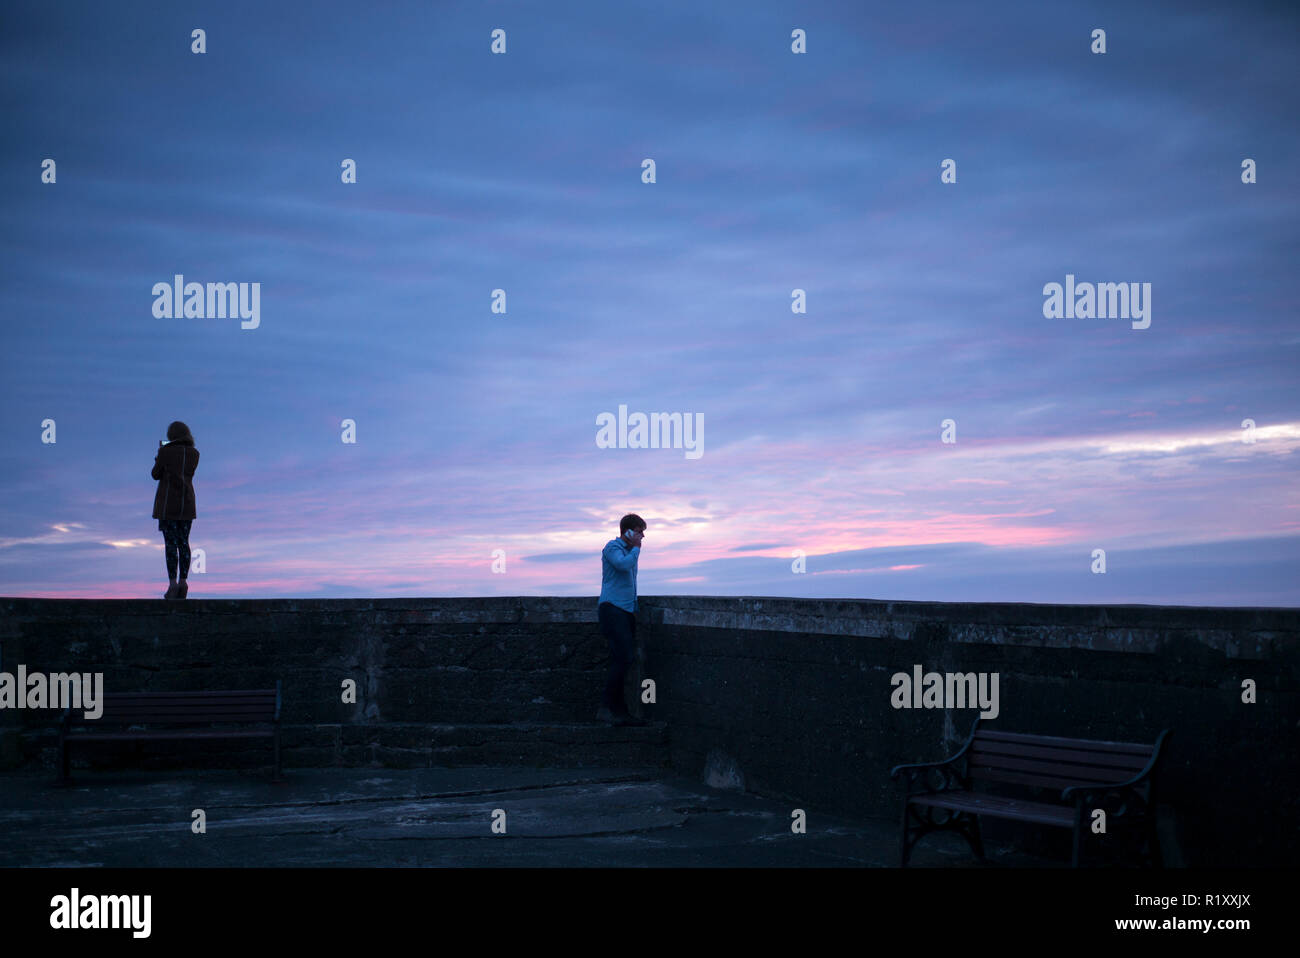 Giovane donna prende uno smartphone fotografia di colori pastello del tramonto mentre il suo partner prende una chiamata sul suo smartphone, Galles Foto Stock